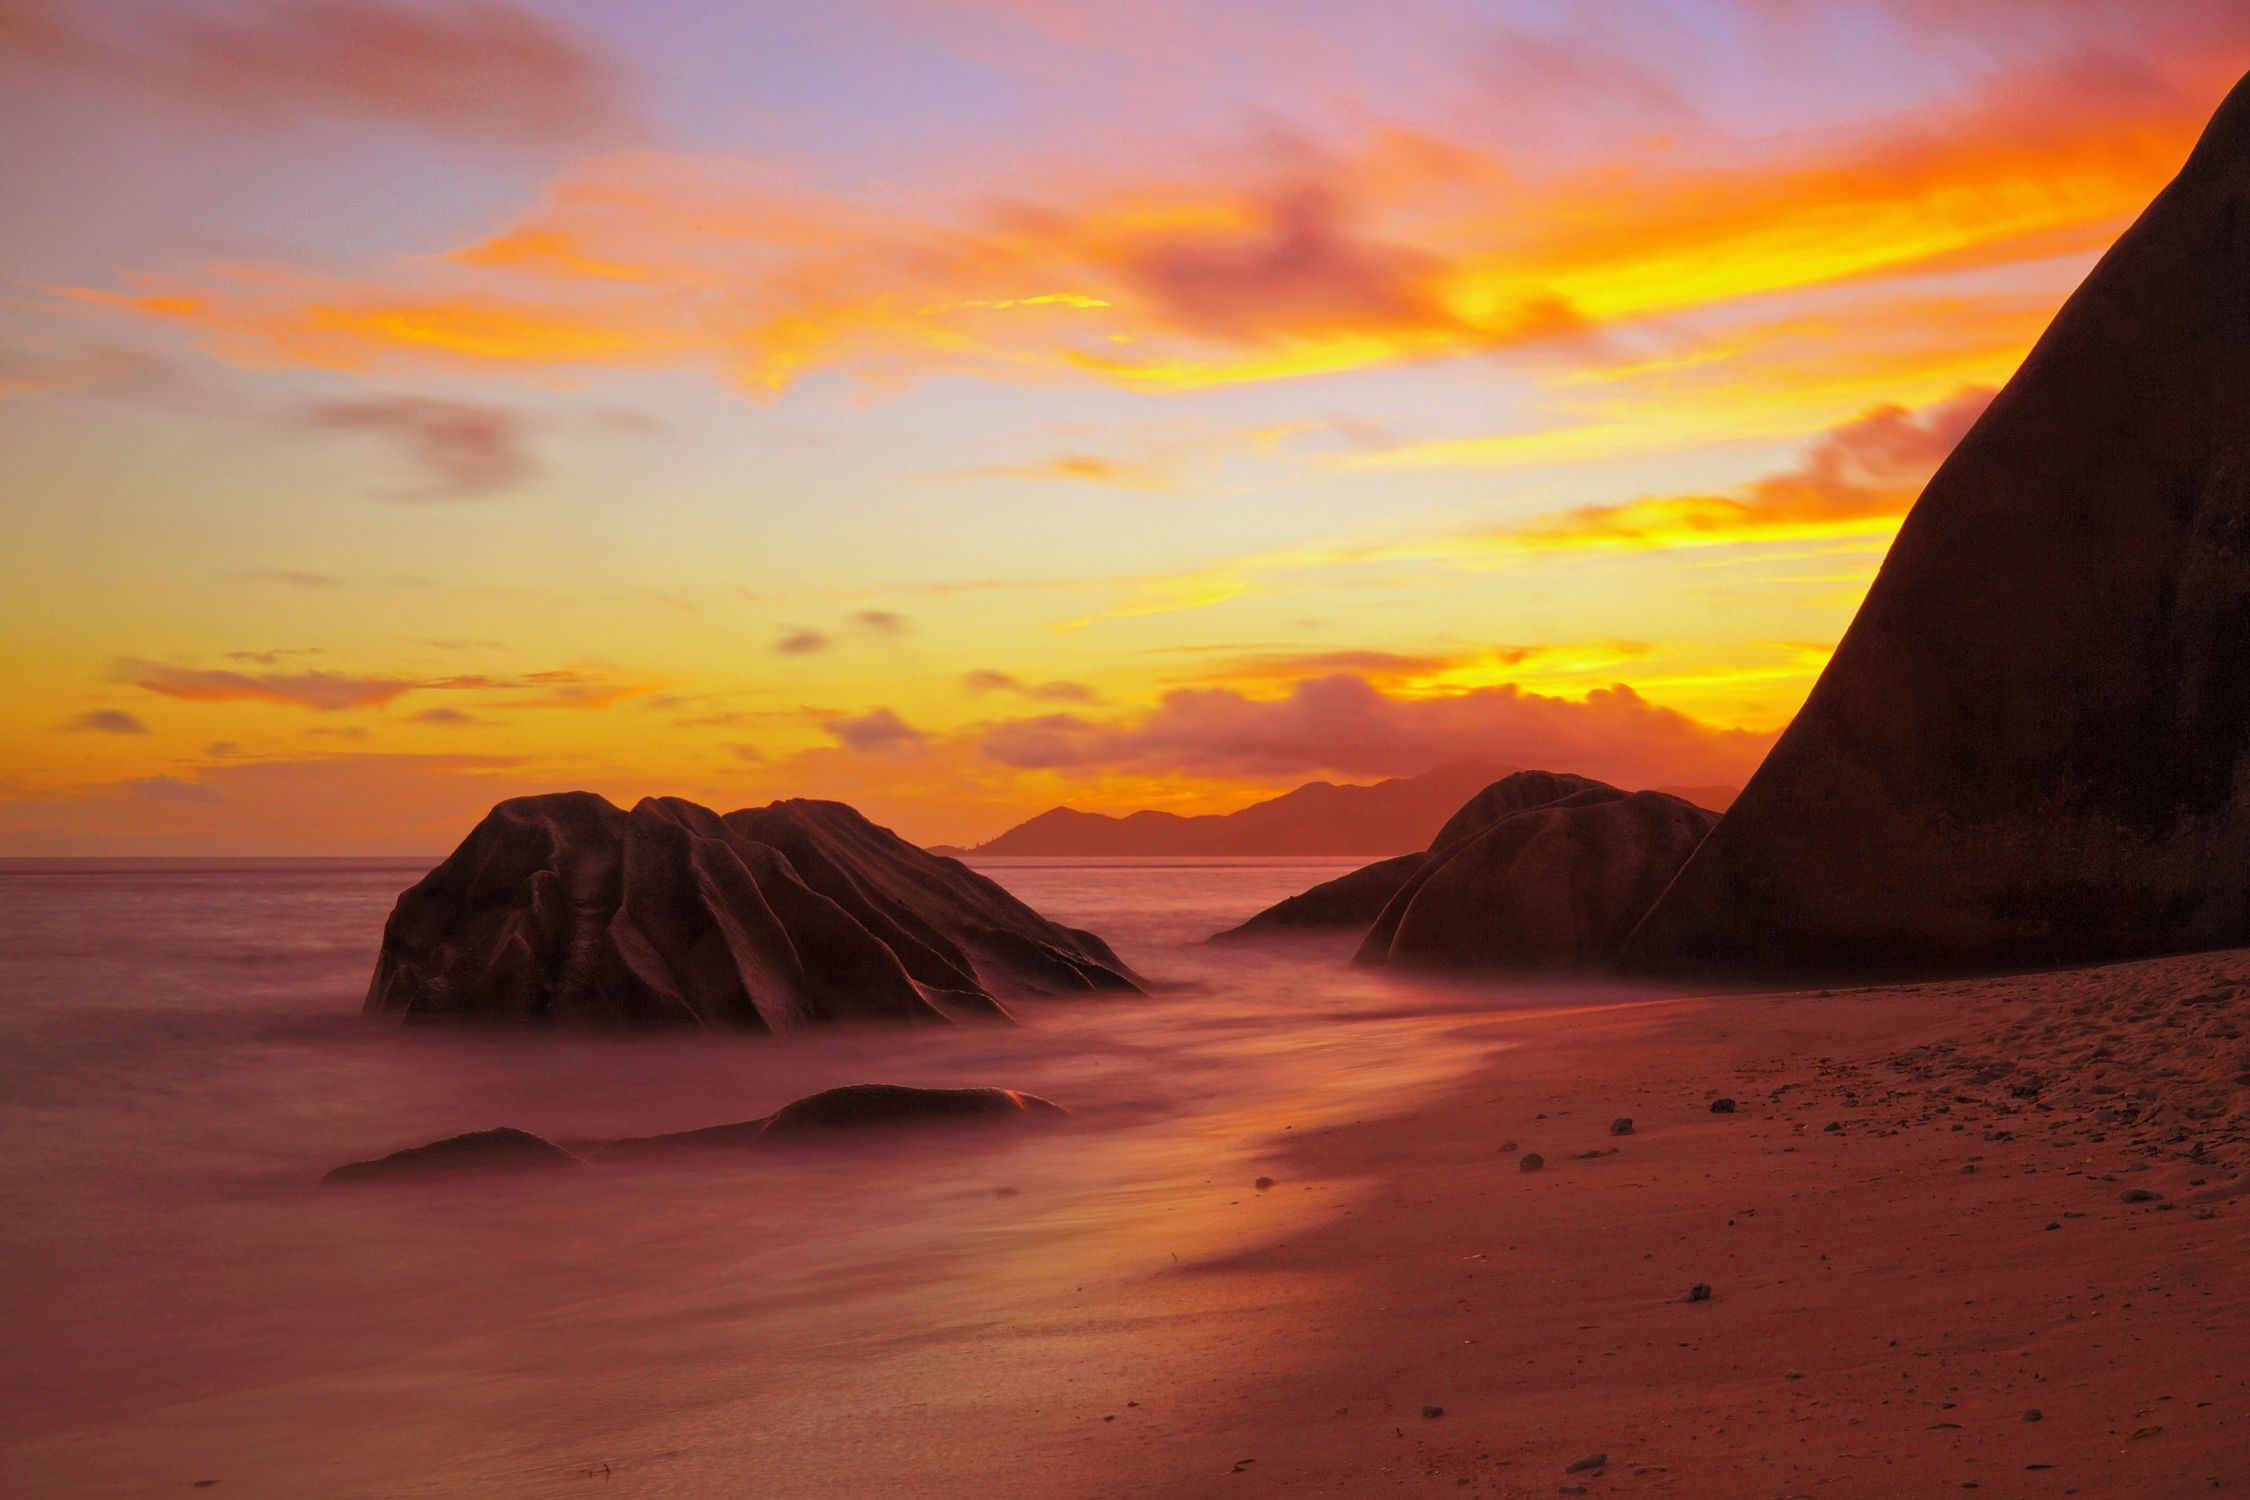 Bild mit Natur, Felsen, Sand, Sonnenuntergang, Strand, Paradies, Sonnenuntergang/Sonnenaufgang, la digue, Seychellen